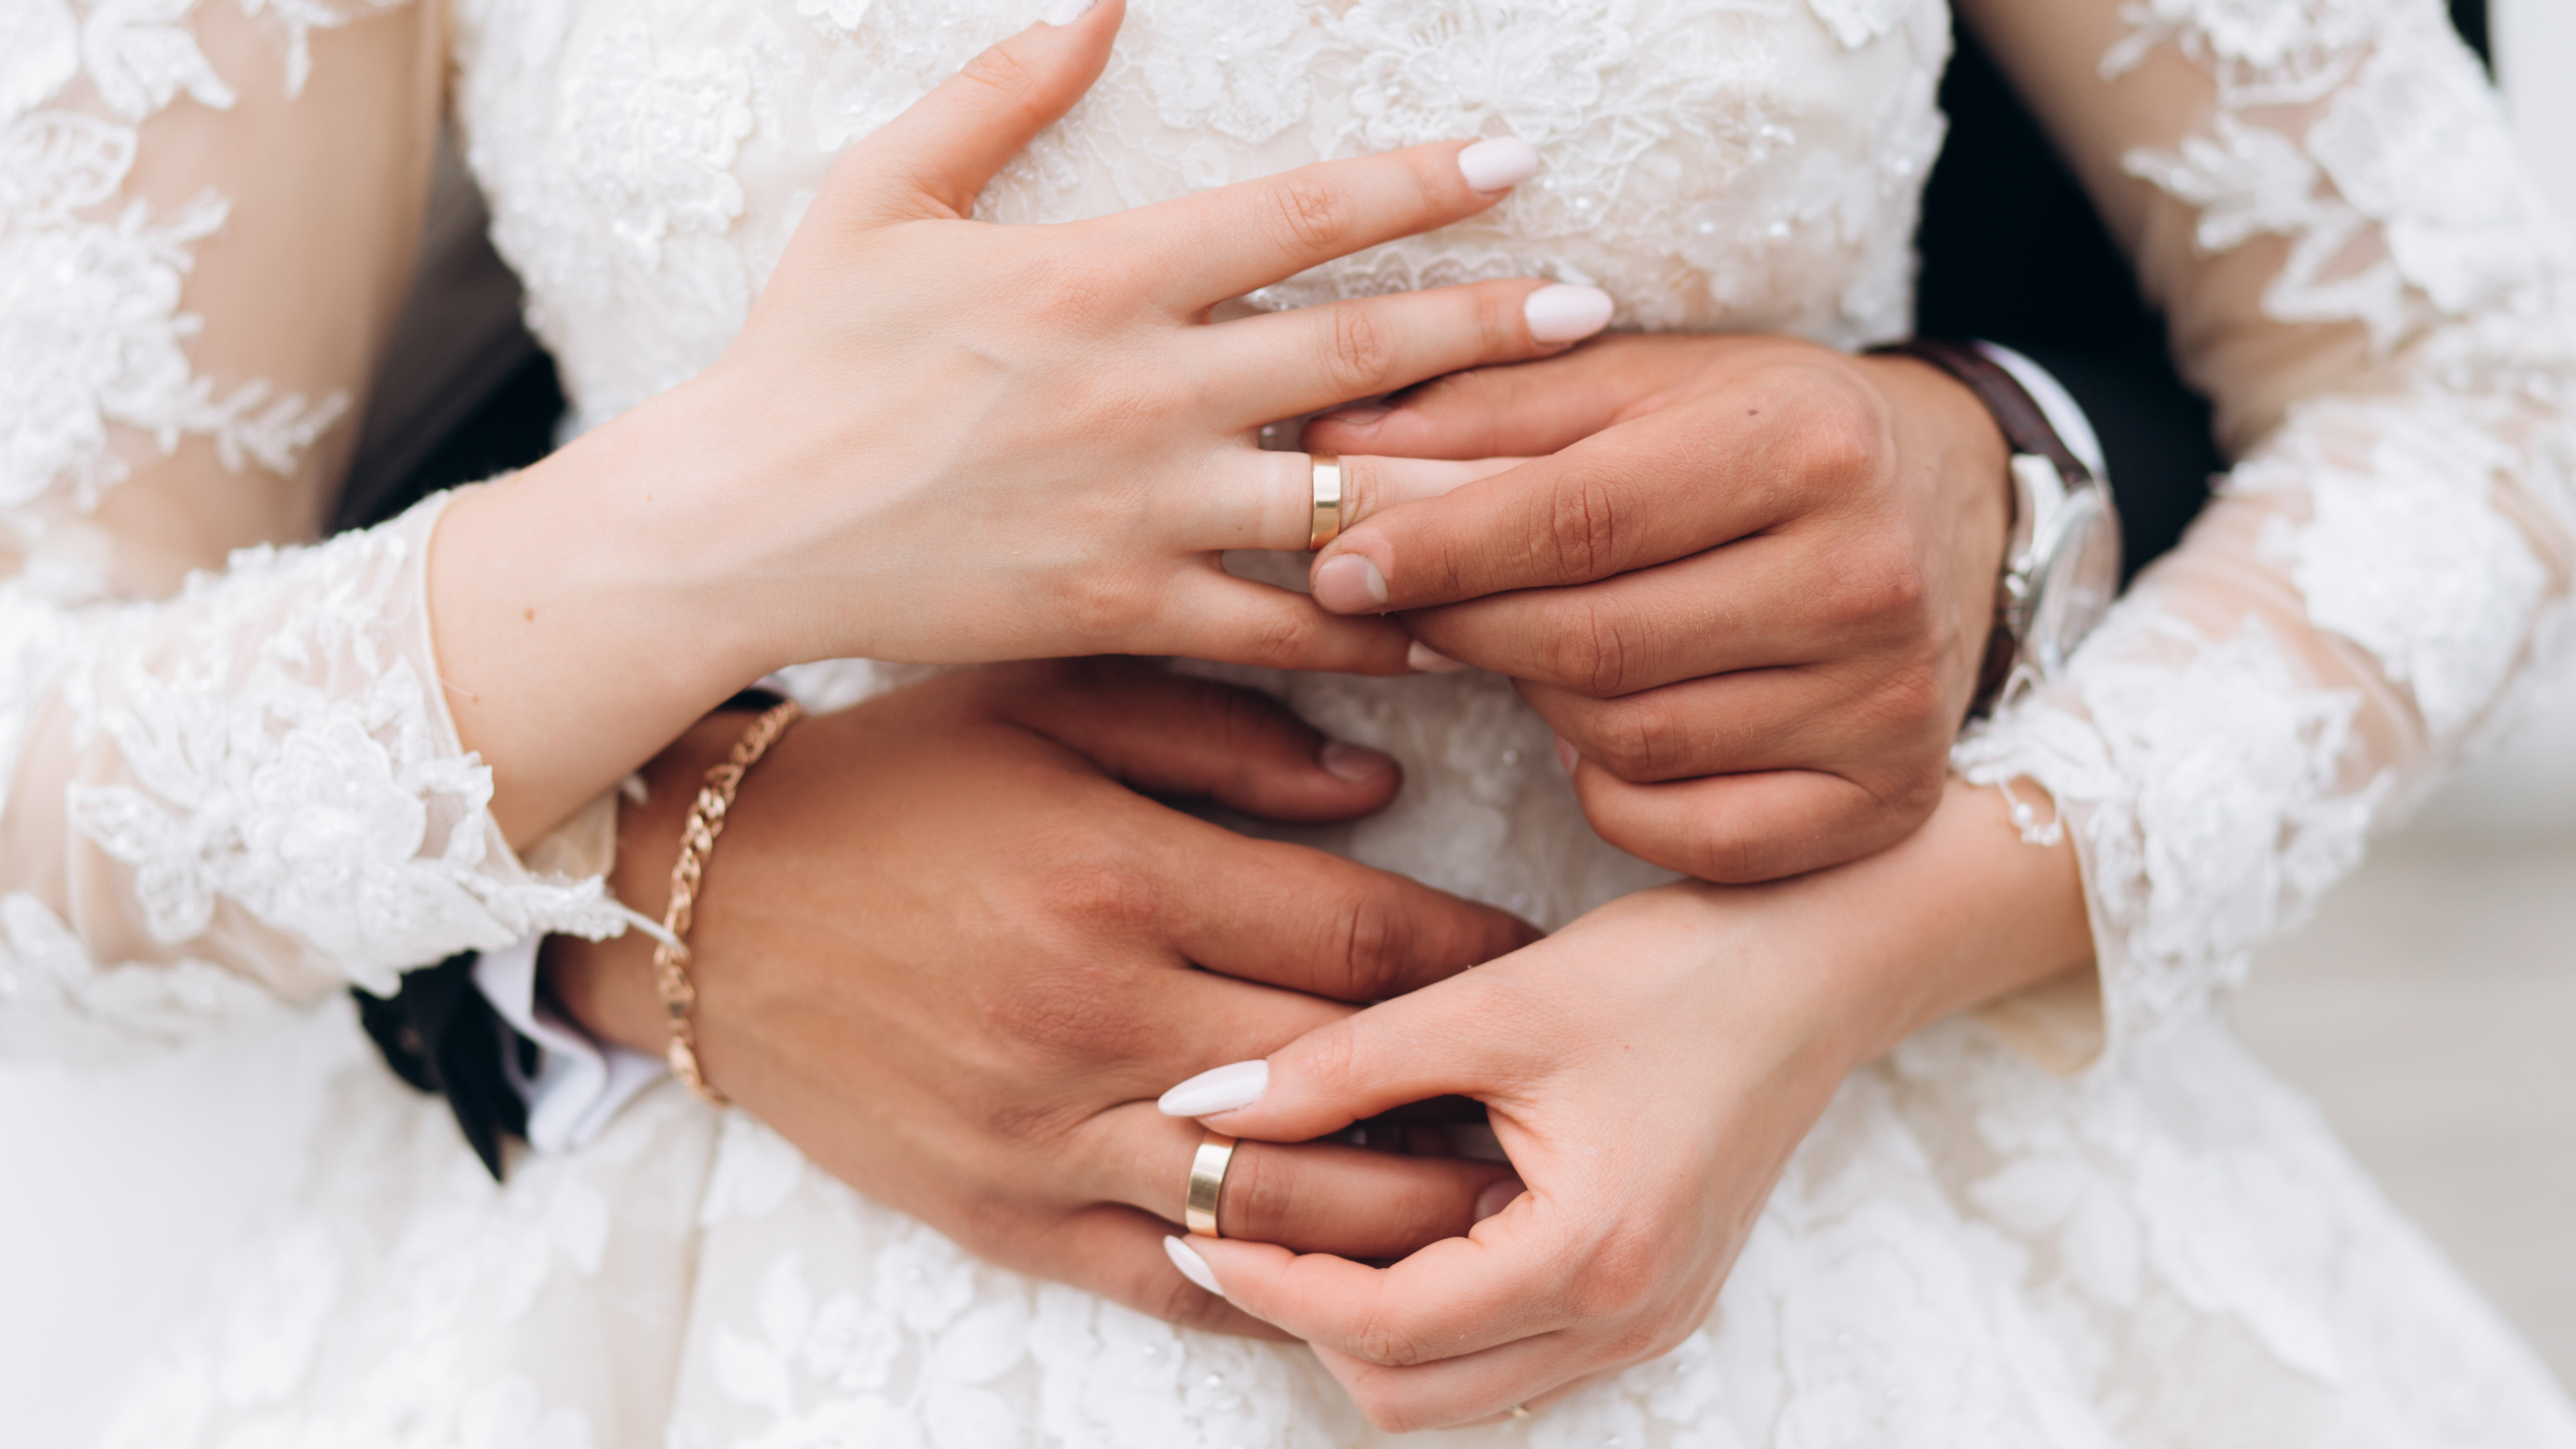 Брачная неделя. Кольца жениха и невесты. Свадебные кольца для невесты. Обручальные кольца на руках жениха и невесты. Руки жениха и невесты с кольцами.